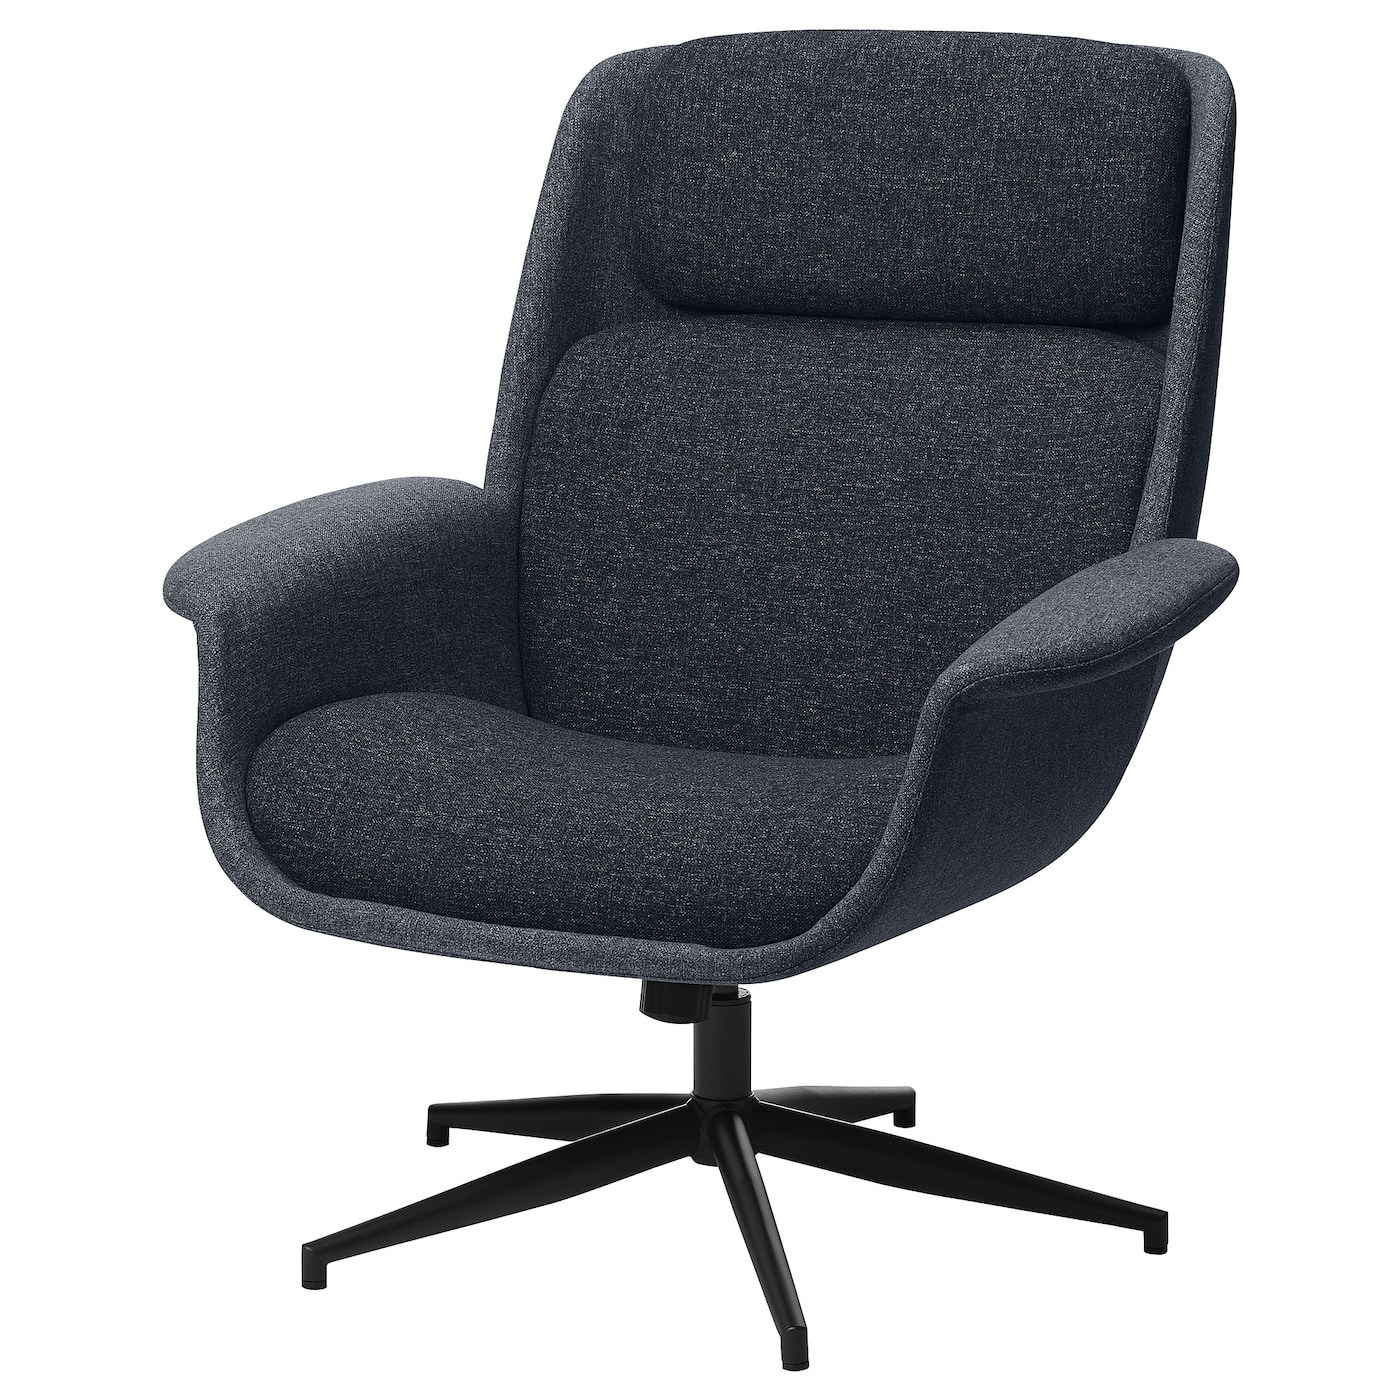 ЭЛЕБИ Вращающееся кресло, Гуннаред средний серый/темно-серый ÄLEBY IKEA офисное кресло с поддержкой спинки дизайнерское кресло руководителя офисное кресло с подставкой для ног современная офисная мебель jw75jy